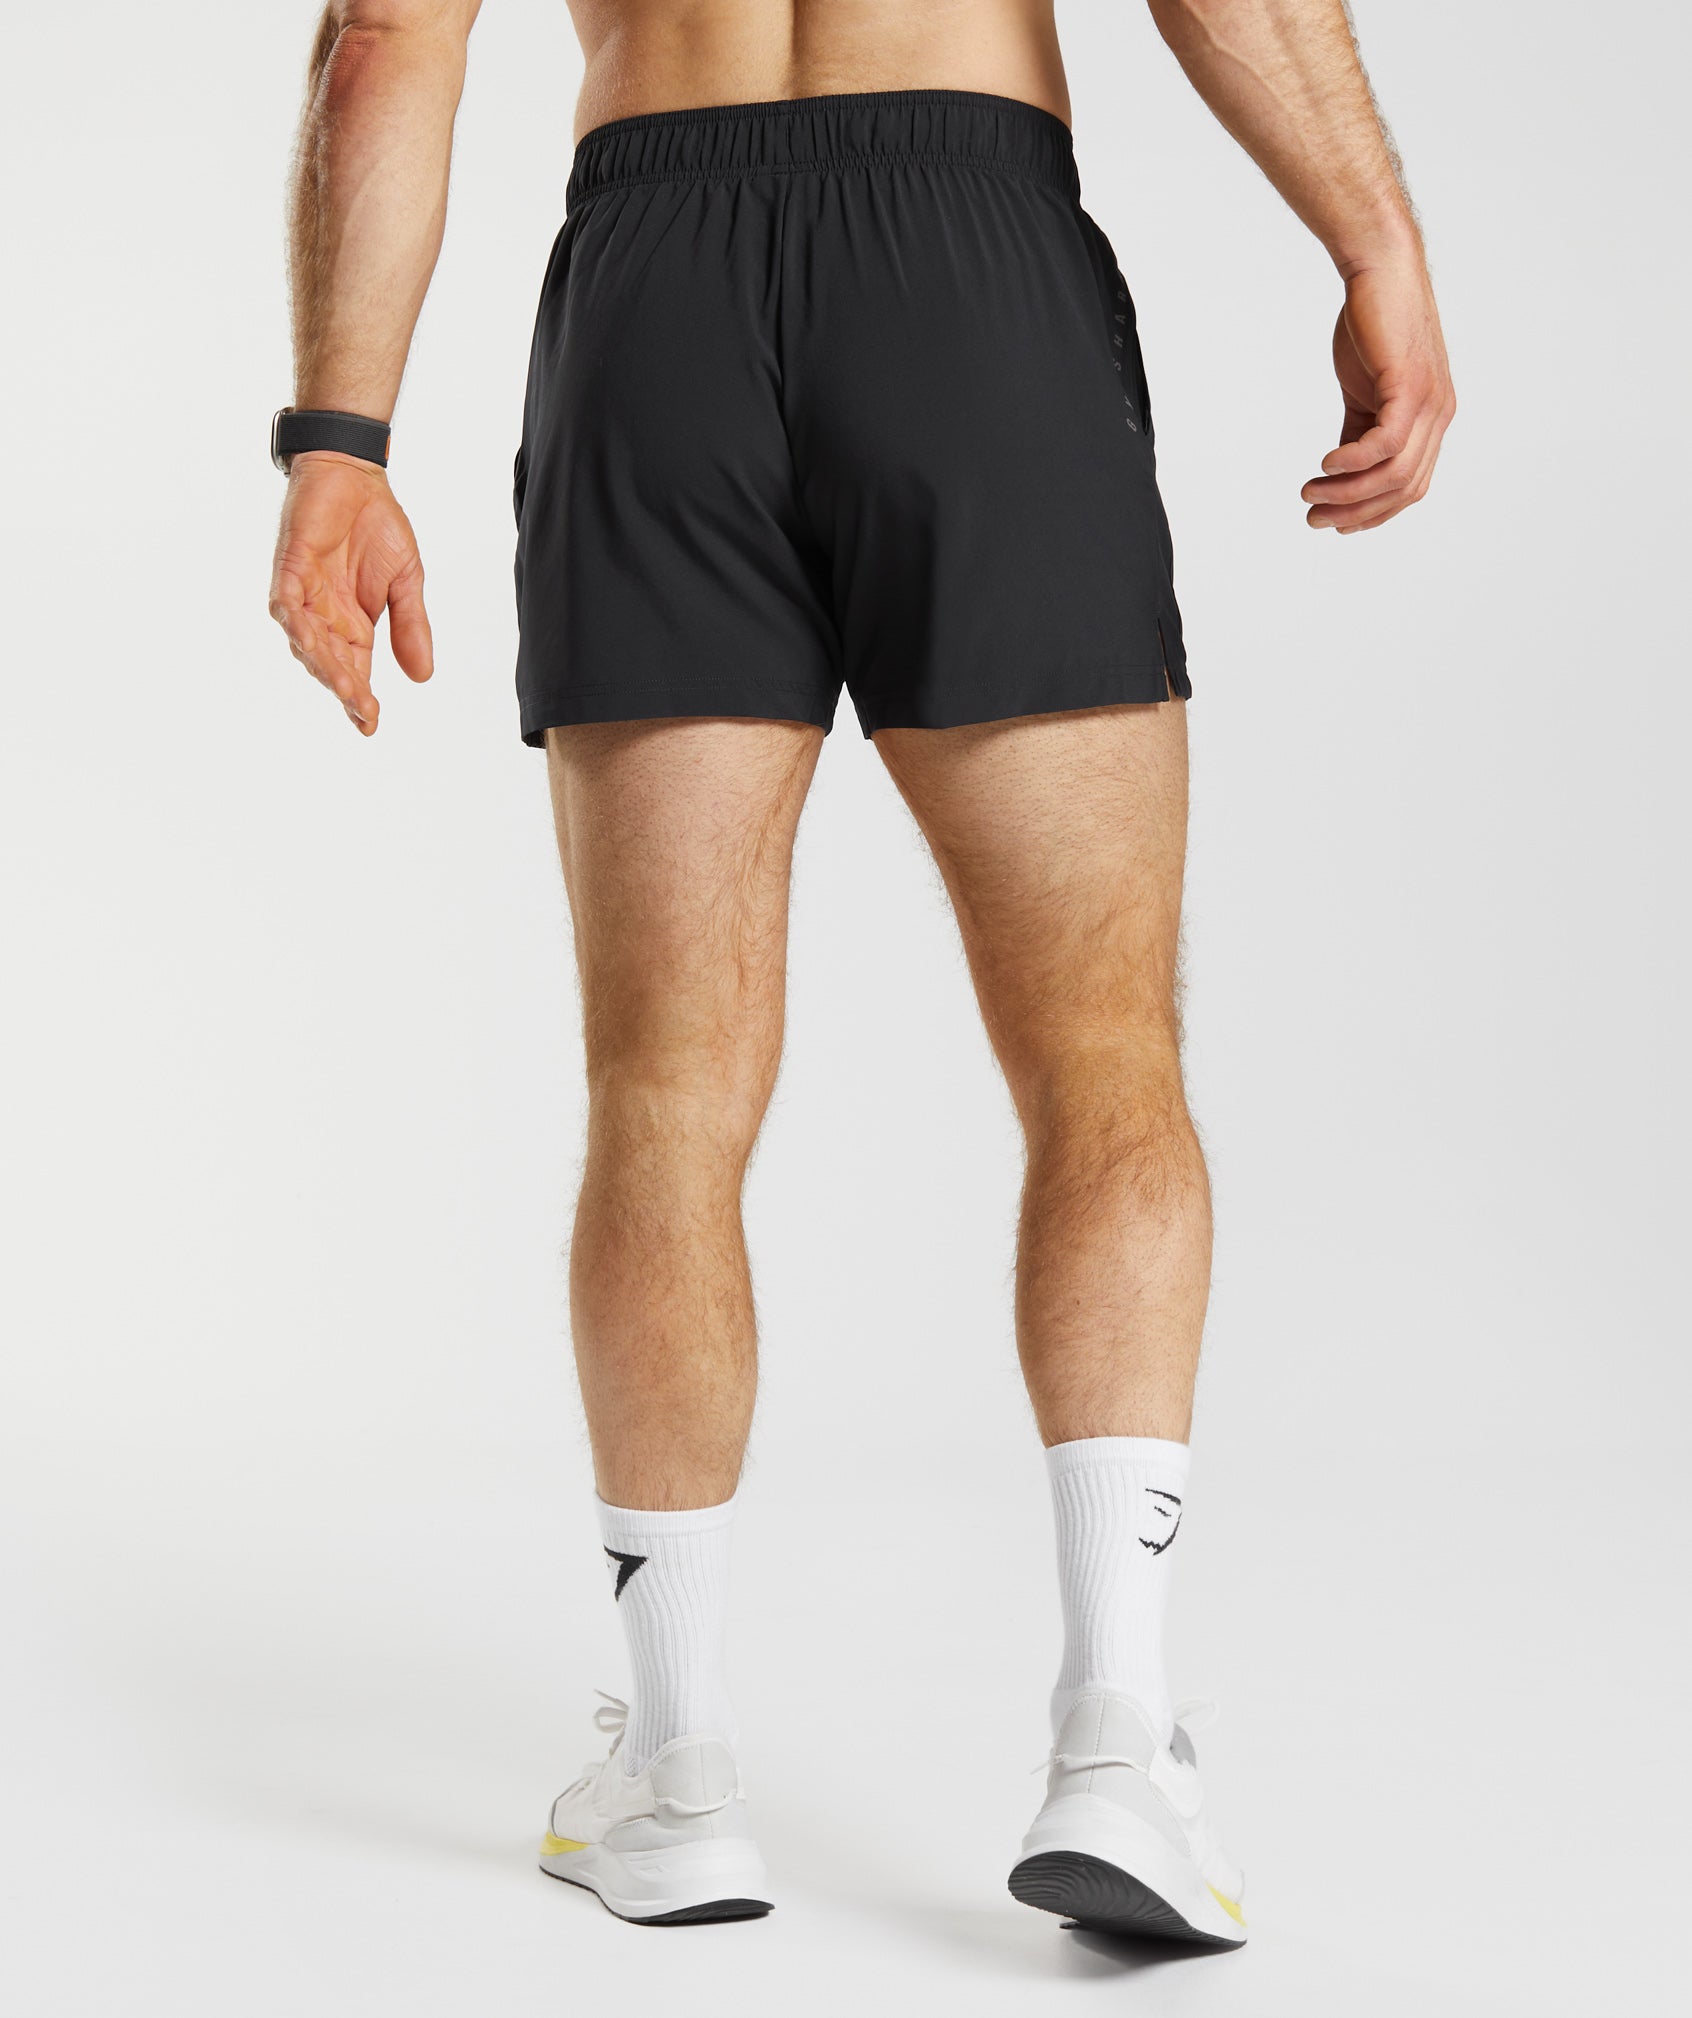 Gym shorts men - купить недорого